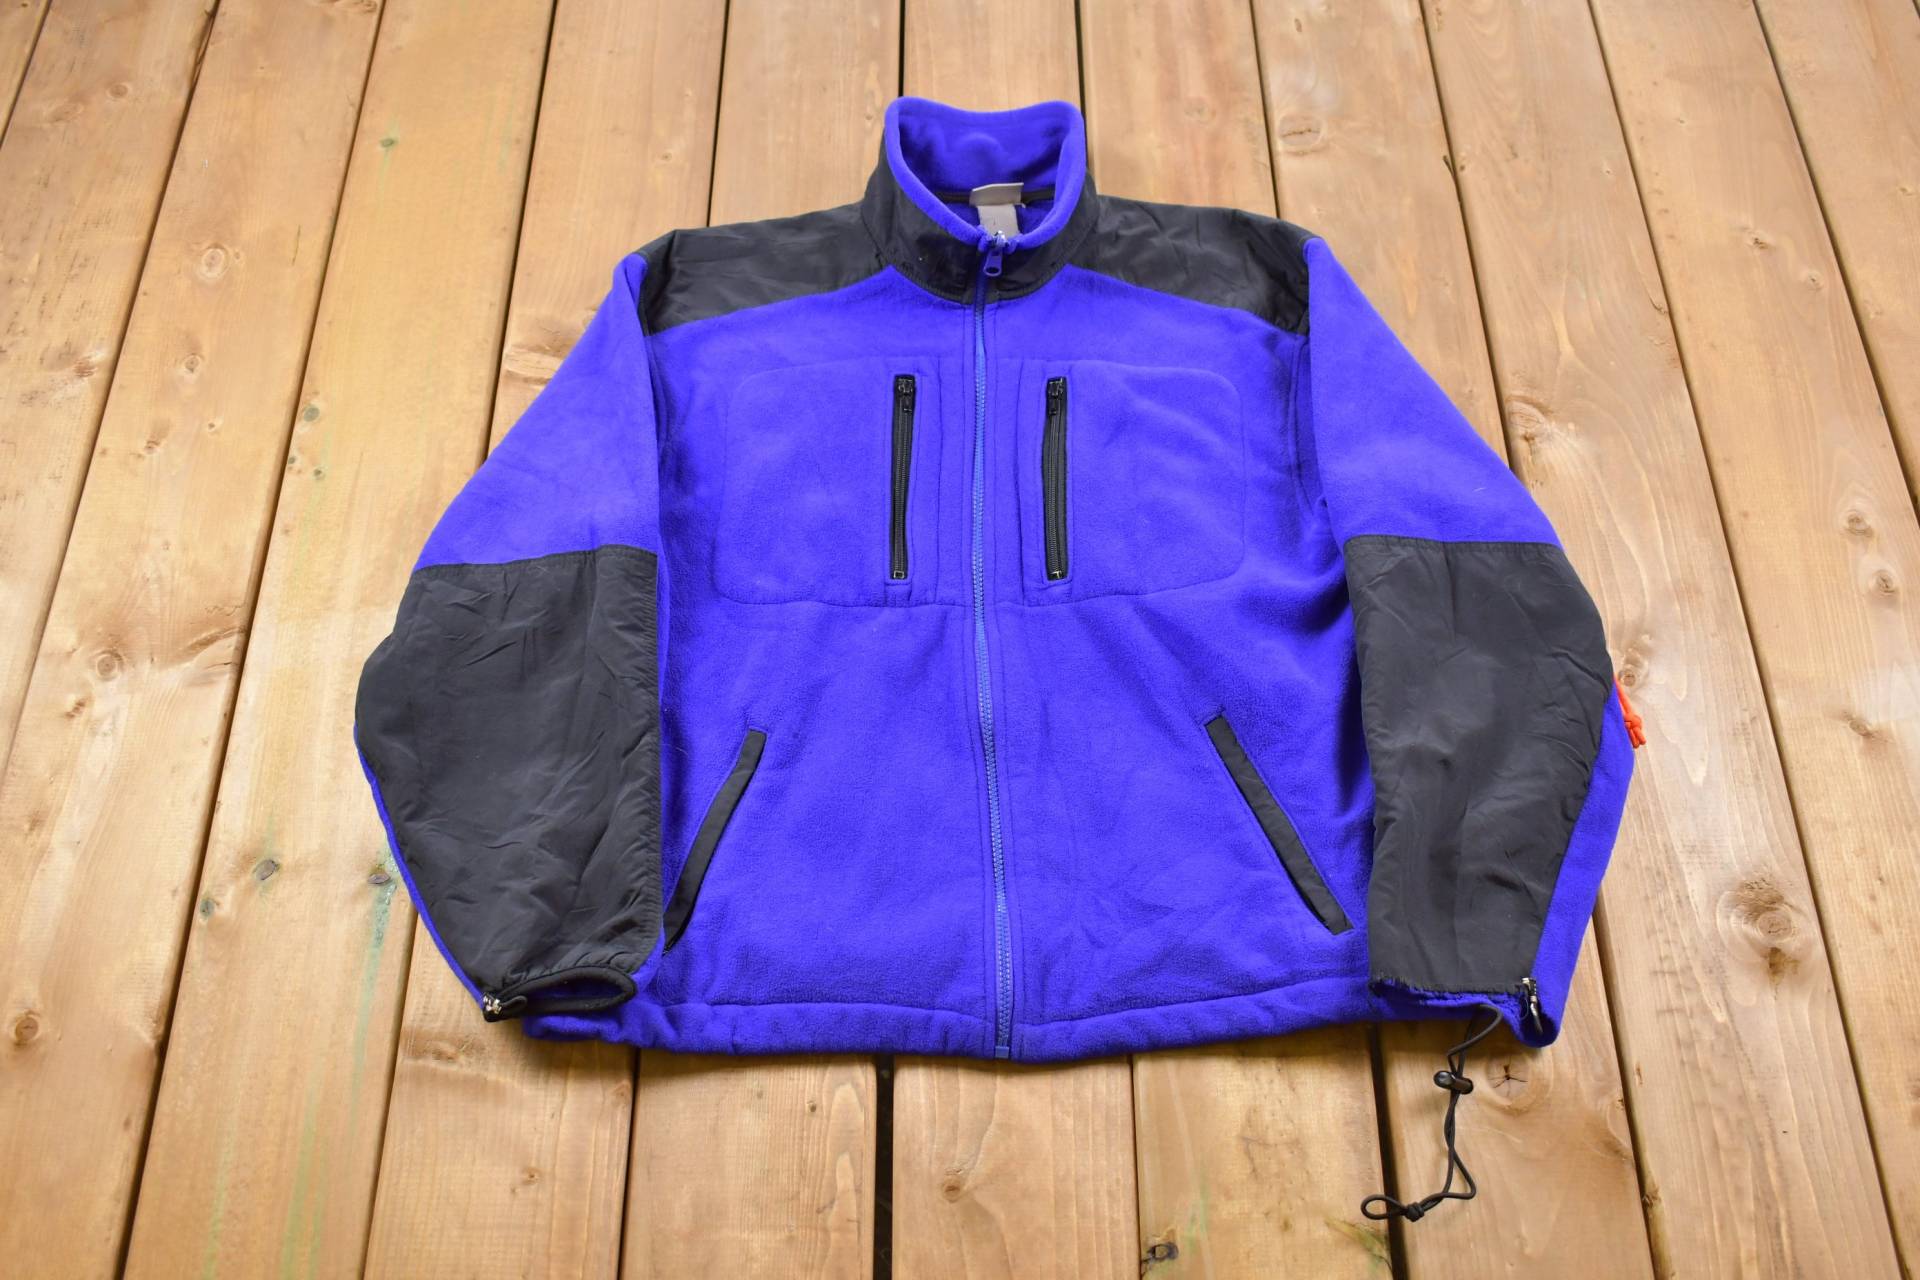 Vintage 1990Er L.l Bean Fleece Zip Up Pullover/Sportbekleidung 90Er Fleecejacke Streetwear Athleisure Wandern Klettern Outdoor von Lostboysvintage